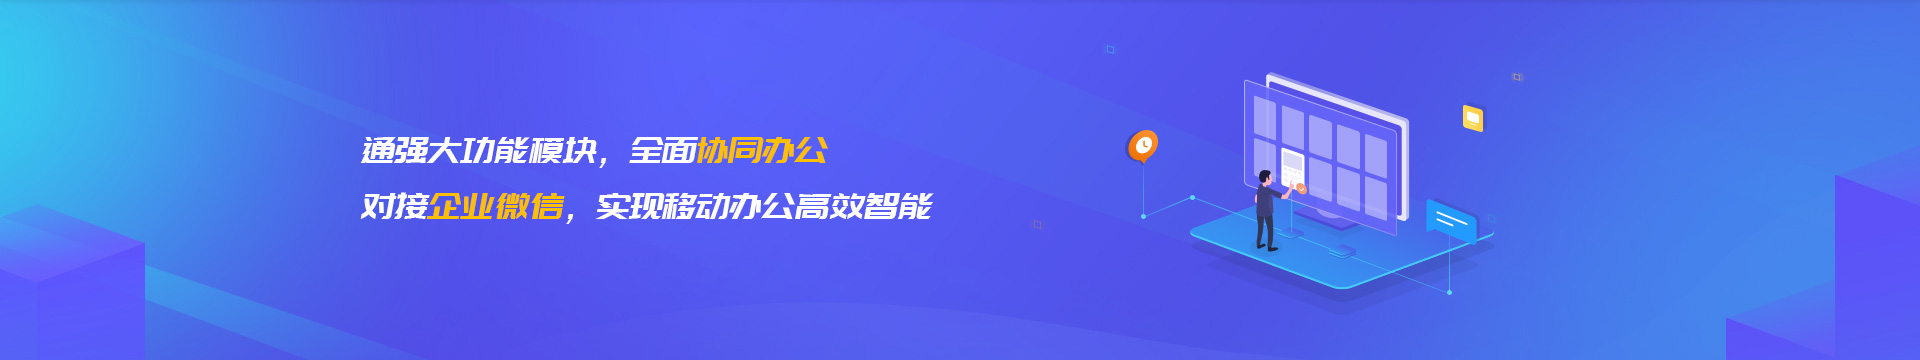 迪庆藏族企业微信开发